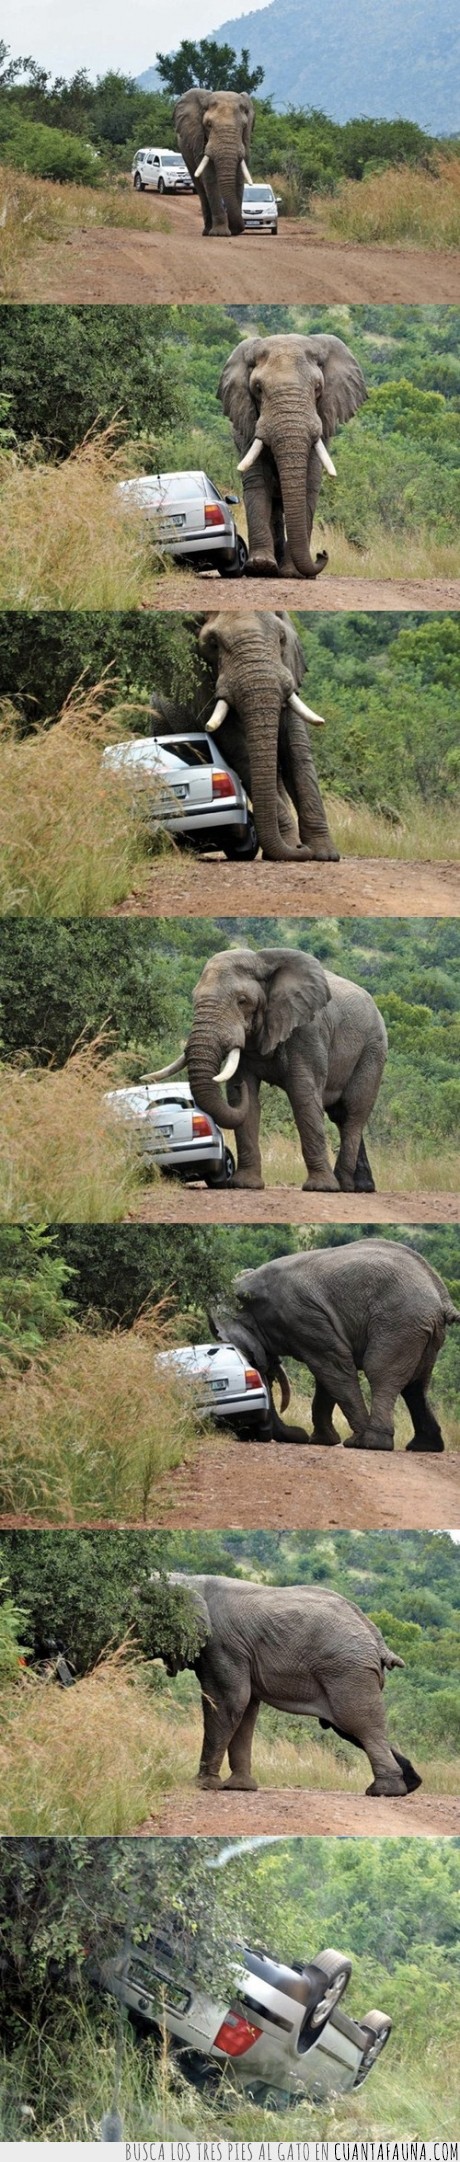 elefante,coche,empujar,cabeza,paso,interrumpir